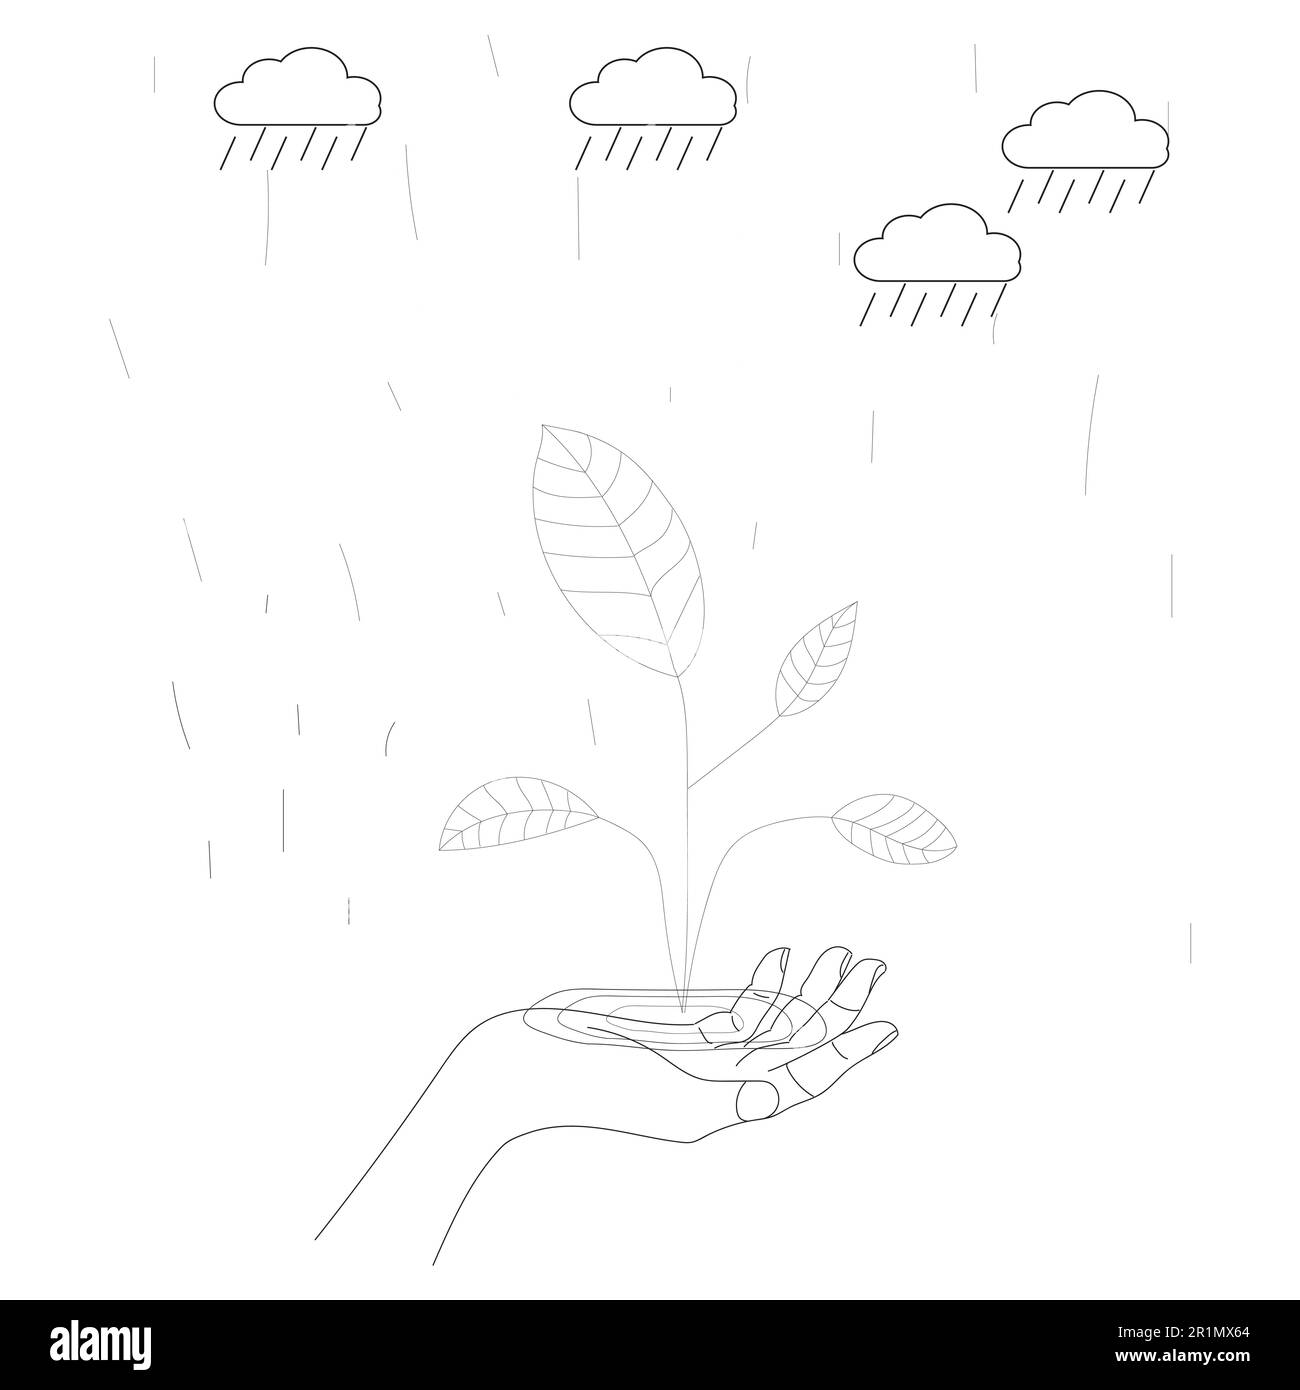 Hände Menschen halten die Erdkugel mit Baum, Sonne, Regenwolke, Linie oder Doodle, Hand zeichnet schwarz-weiß, Erde Planet Ökologie der Welt Umwelt Stockfoto